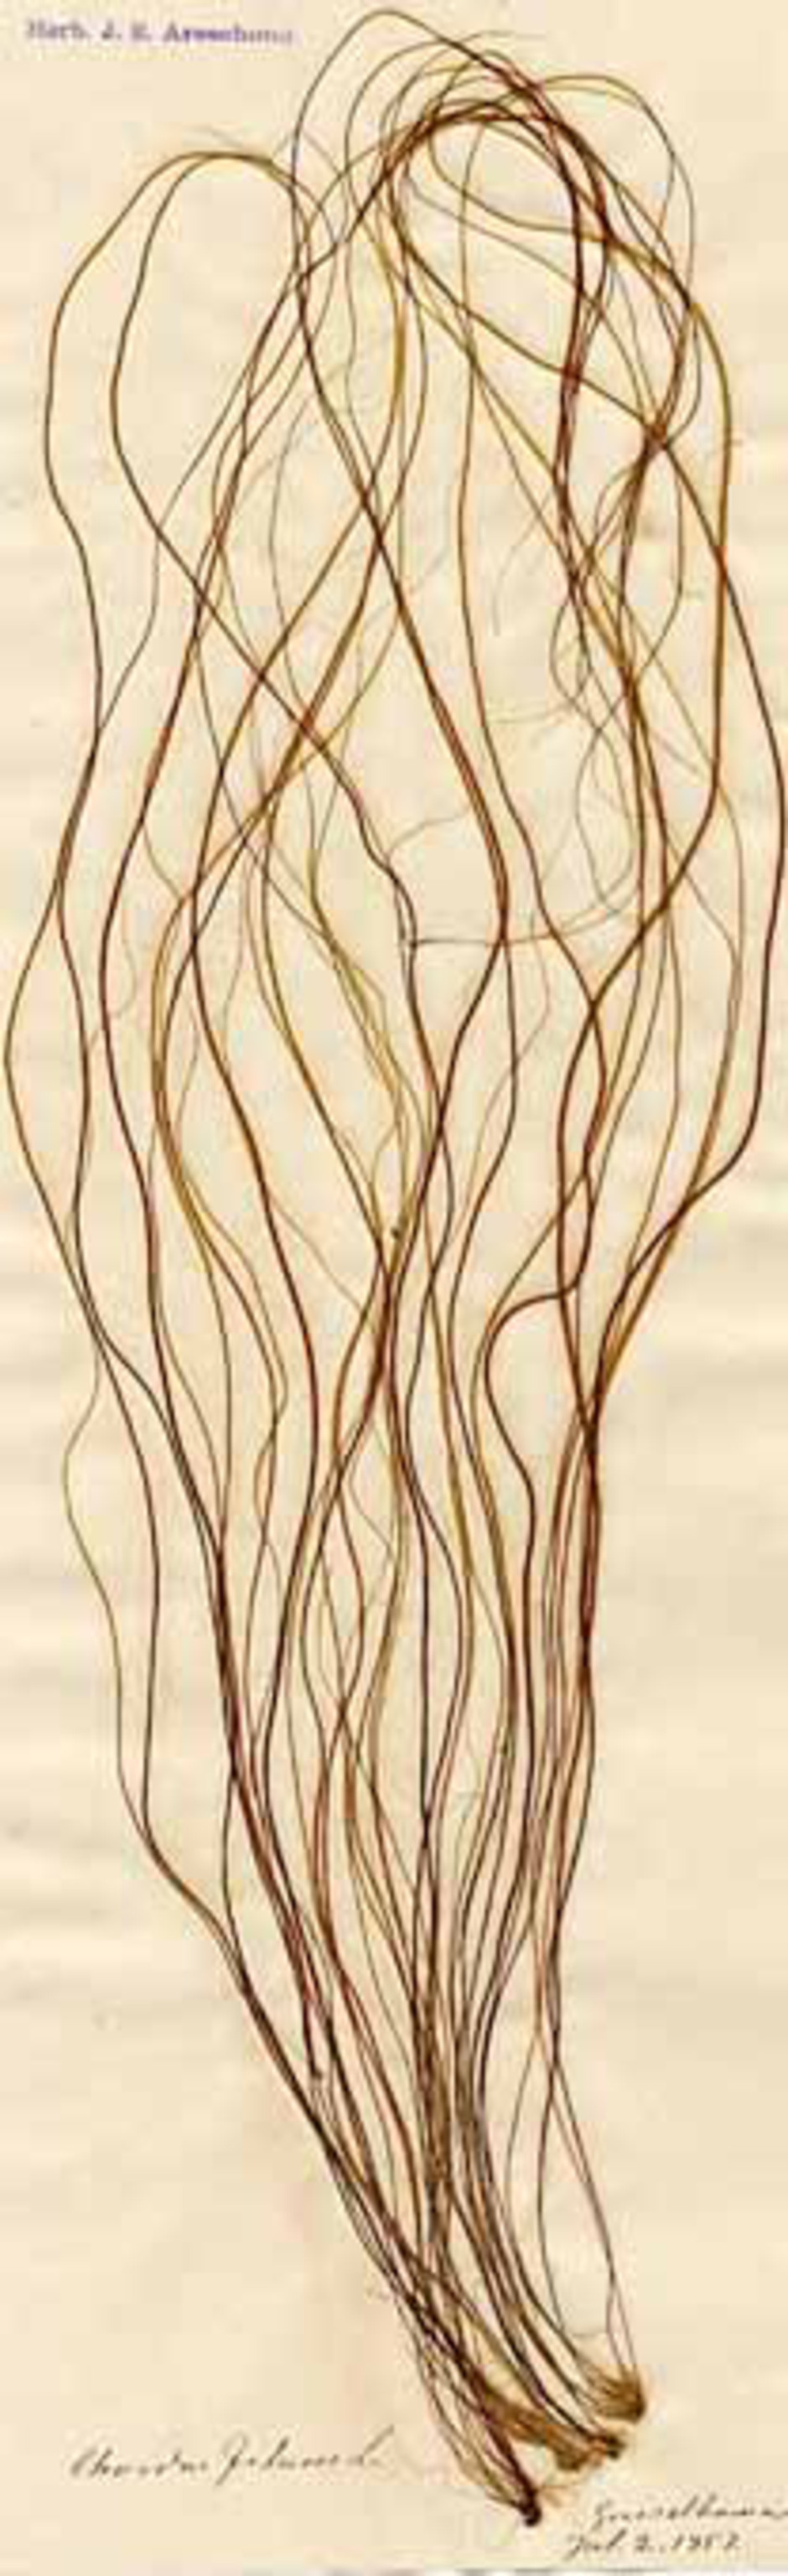 Sudarens trådar kan växa från samma utgångspunkt så att det ser ut som ett enda buskigt exemplar av en alg. Dessa samlades i juli 1857 utanför Grisslehamn. Från Herbarium J. E. Areschoug. Ur Naturhistoriska riksmuseets samlingar